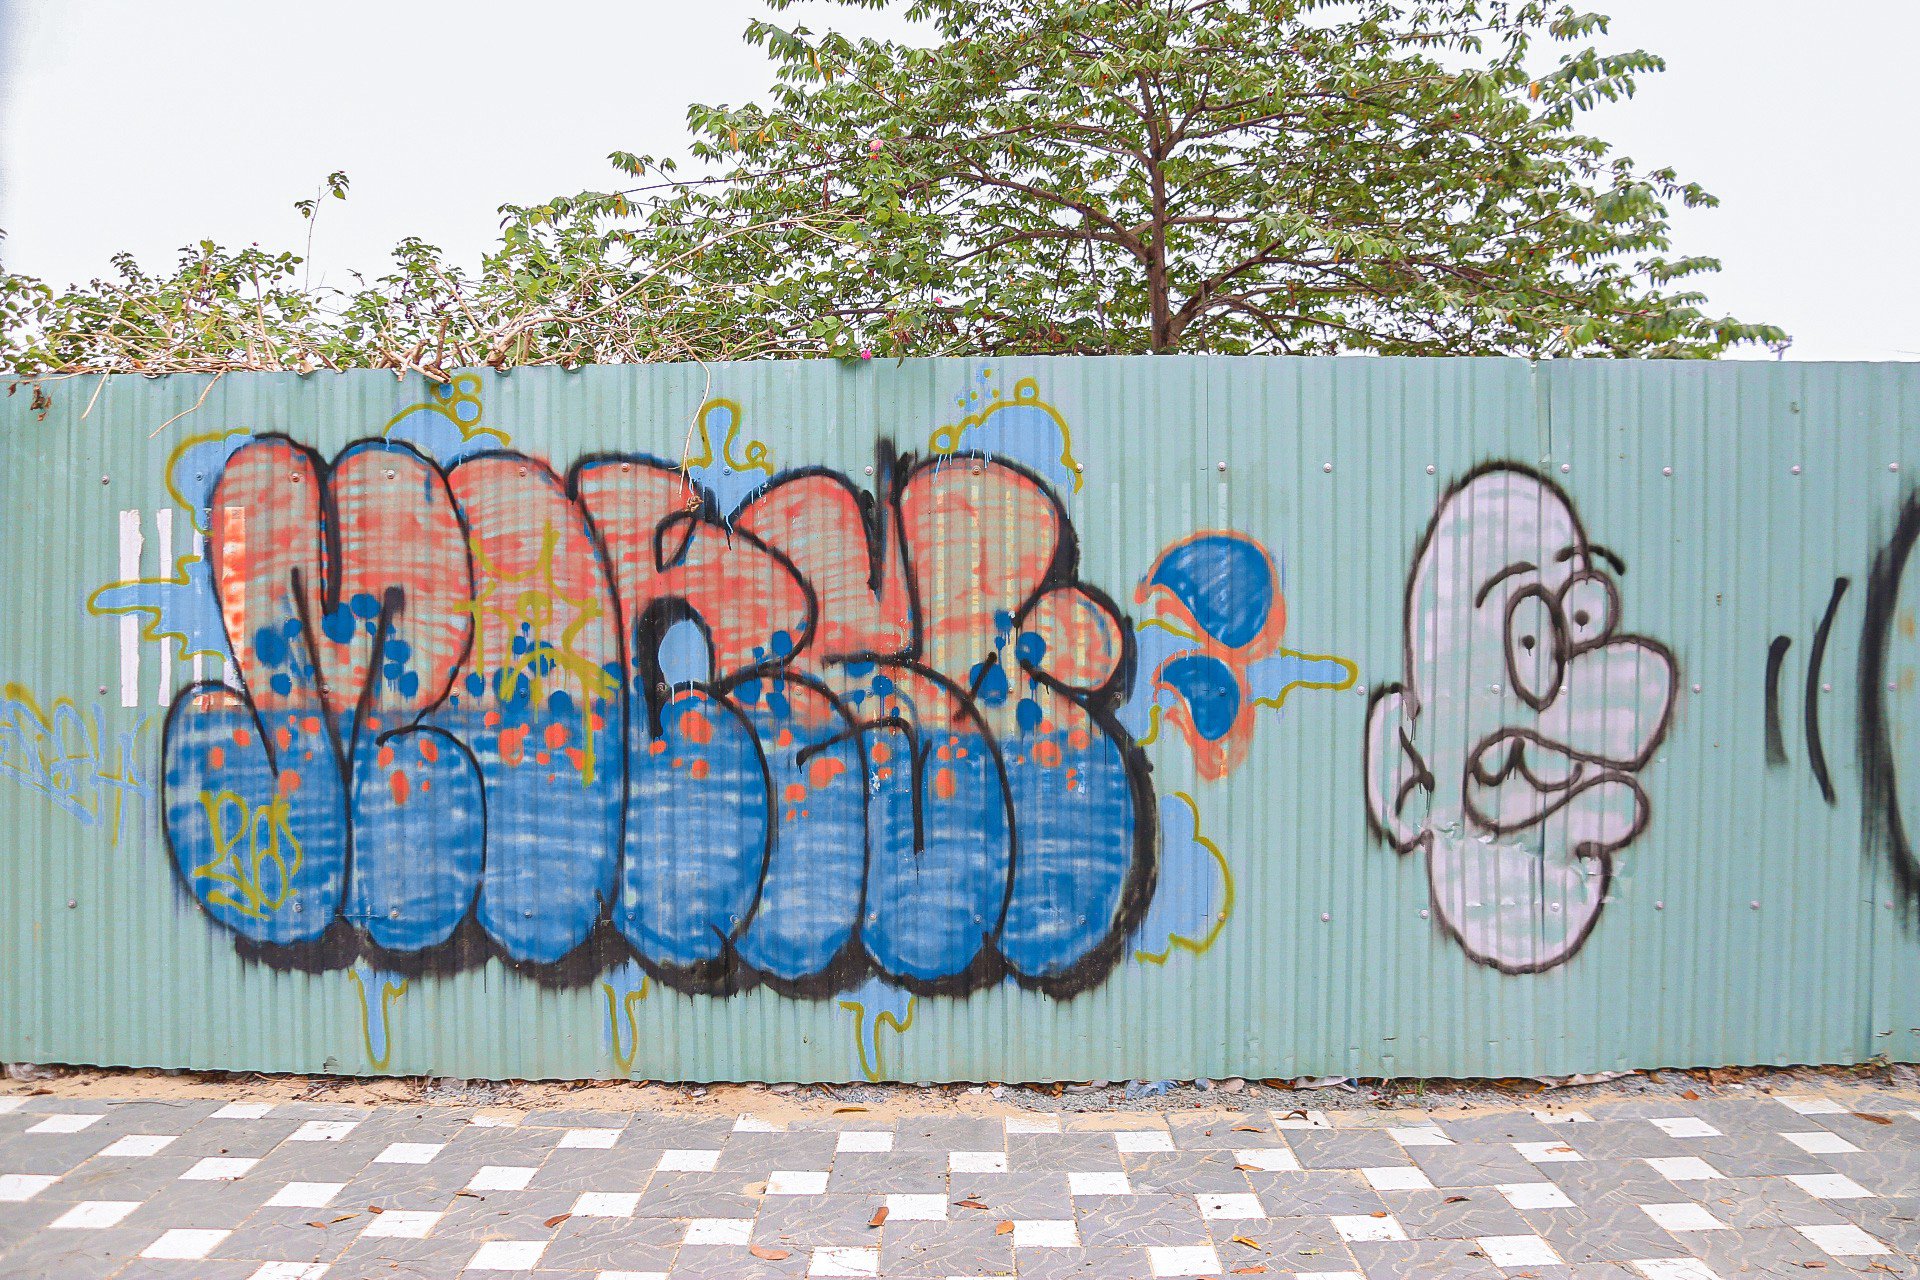 Tình trạng sơn vẽ tại các công trình công cộng trên địa bàn TP. Đà Nẵng đang diễn ra thường xuyên nhưng đến nay vẫn chưa có hướng xử lý triệt để gây mất mỹ quan đô thị.